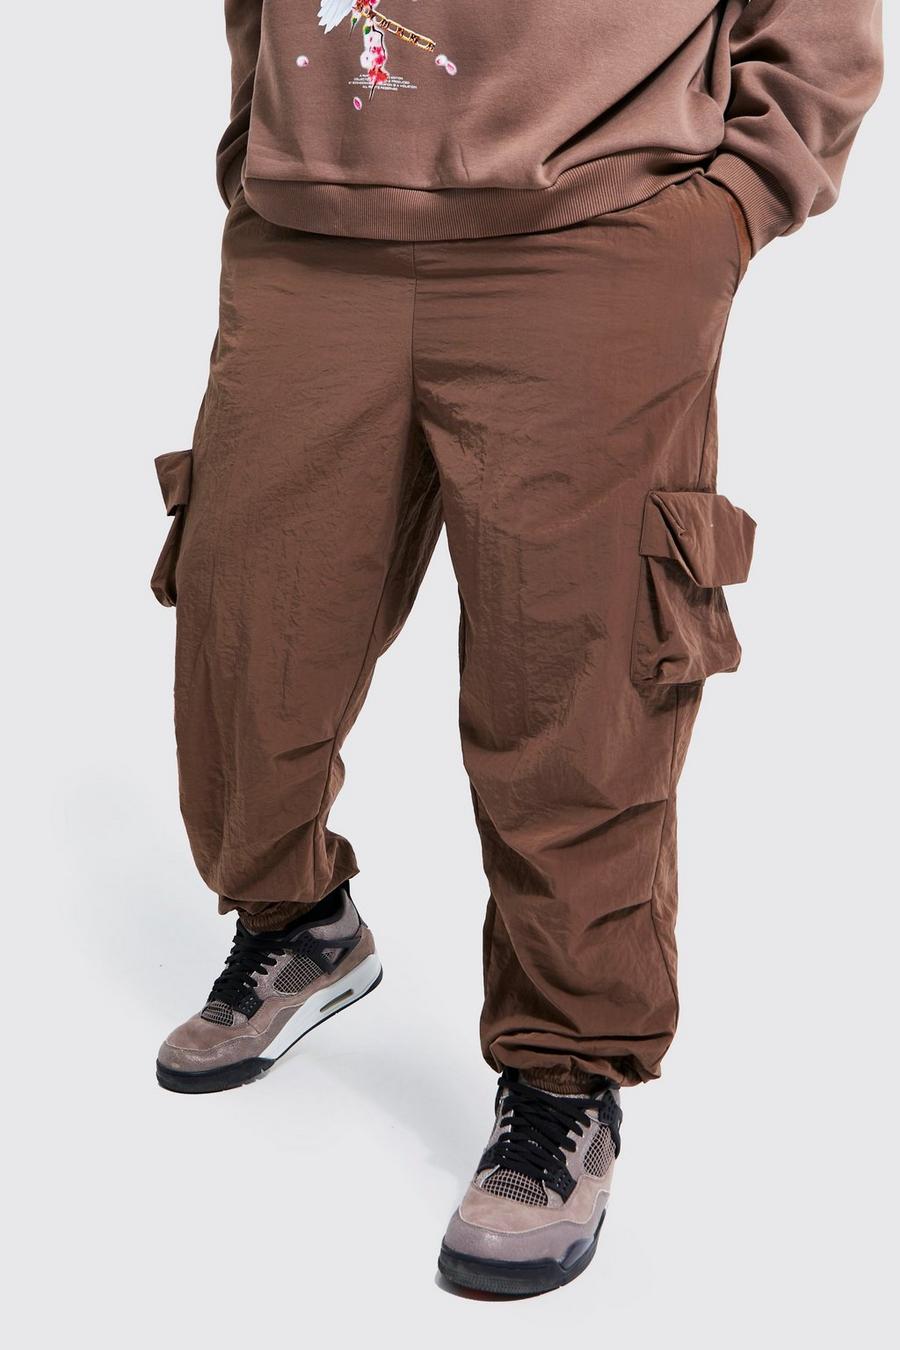 קפה marrón מכנסי ניילון דגמ'ח רפויים עם קמטים, מידות גדולות